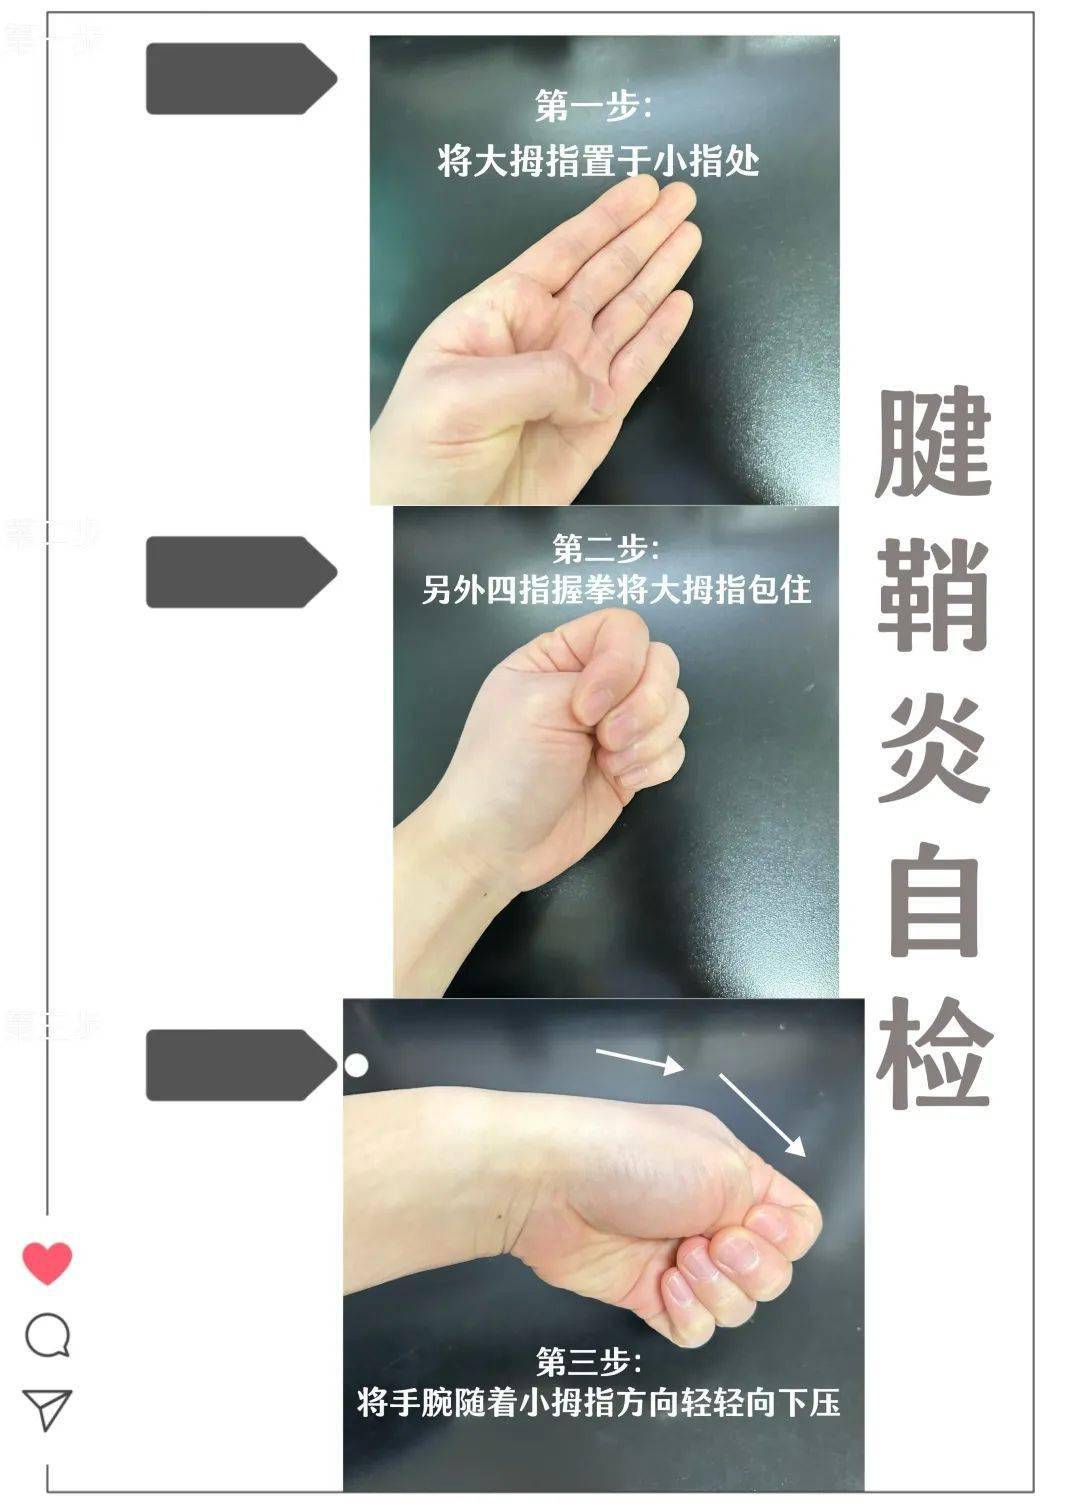 第二步:另外四指握拳将大拇指包住;第一步:将大拇指置于小指处;腱鞘炎